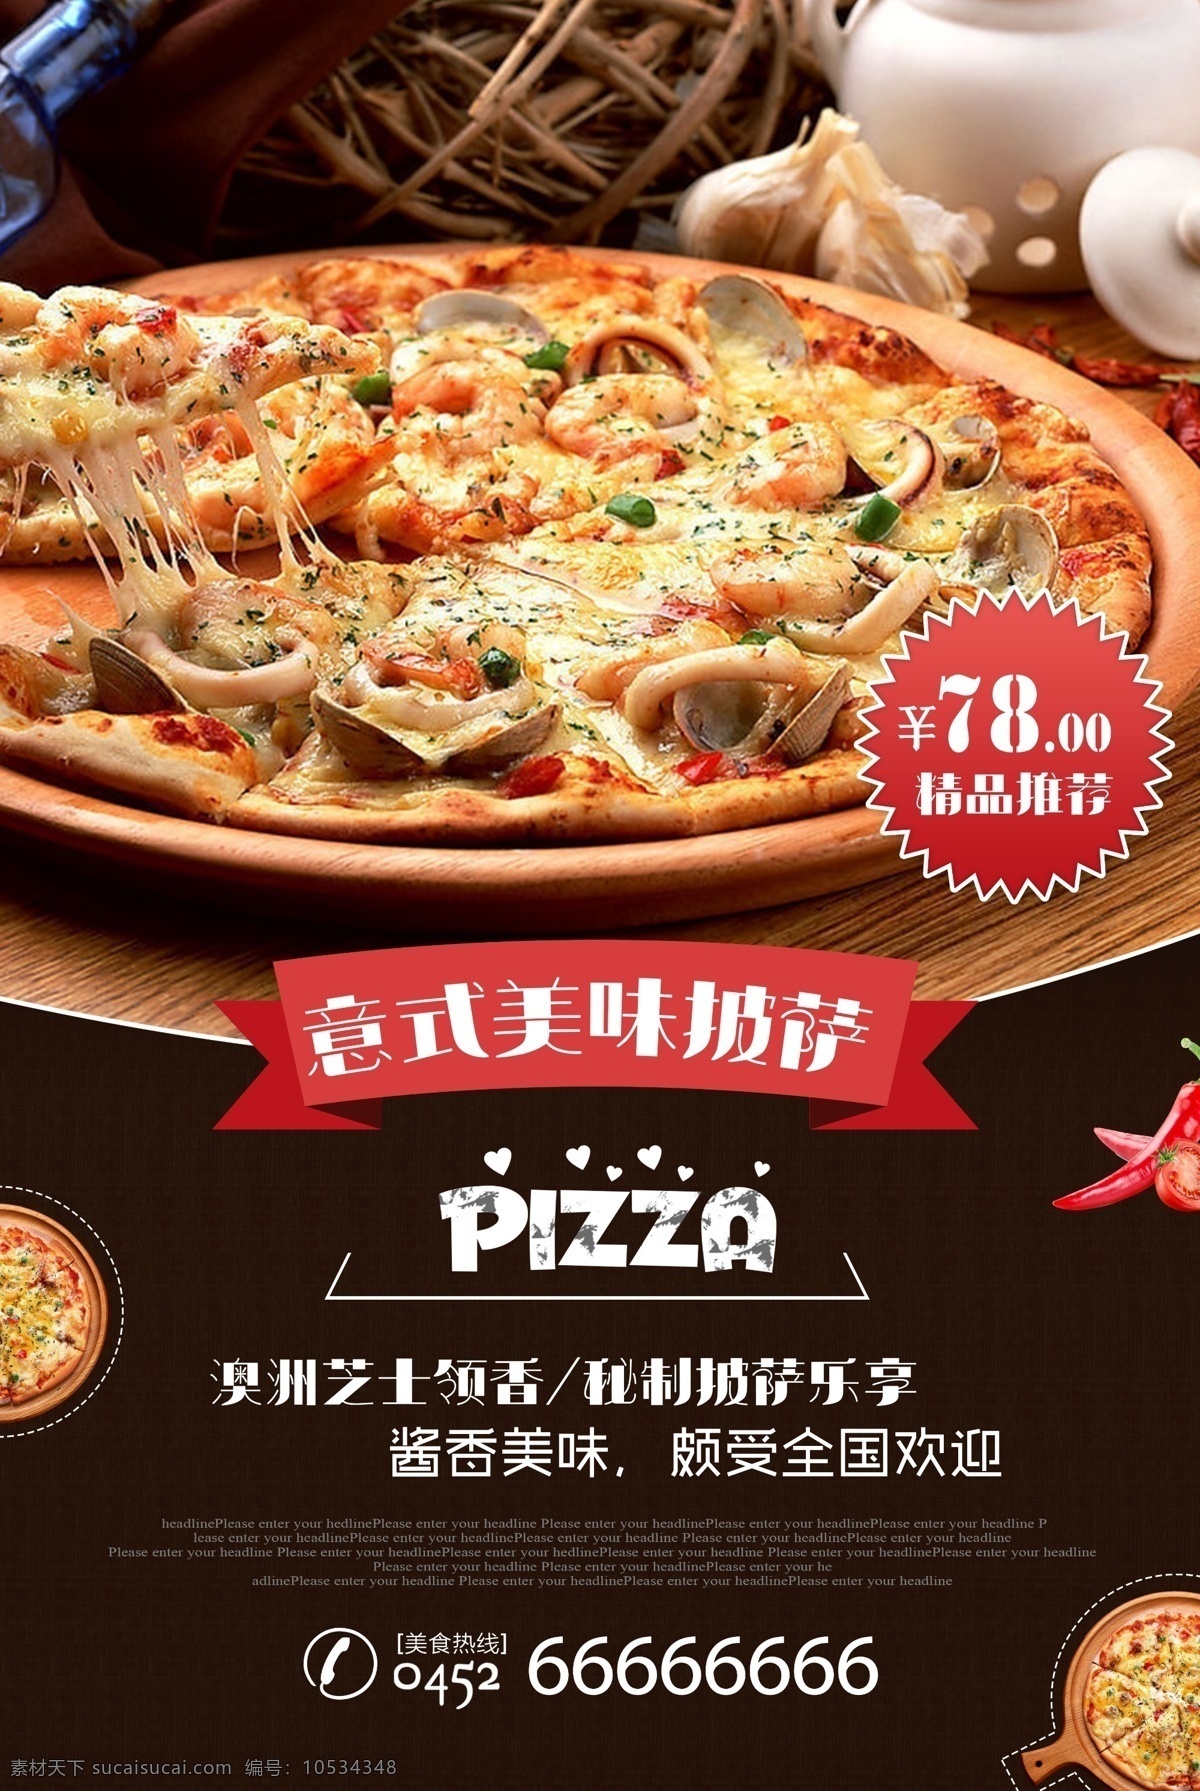 披萨海报 pizza 披萨 披萨店 烤披萨 做披萨 披萨图片 披萨展板 披萨墙画 披萨菜单 牛肉披萨 夏威夷披萨 bbq披萨 田园披萨 水果披萨 菠萝披萨 意式披萨 披萨字体 培根披萨 至尊披萨 披萨展架 西餐披萨 披萨广告 披萨宣传 披萨制作 外卖披萨 披萨宣传单 披萨单页 美味披萨 西餐美食